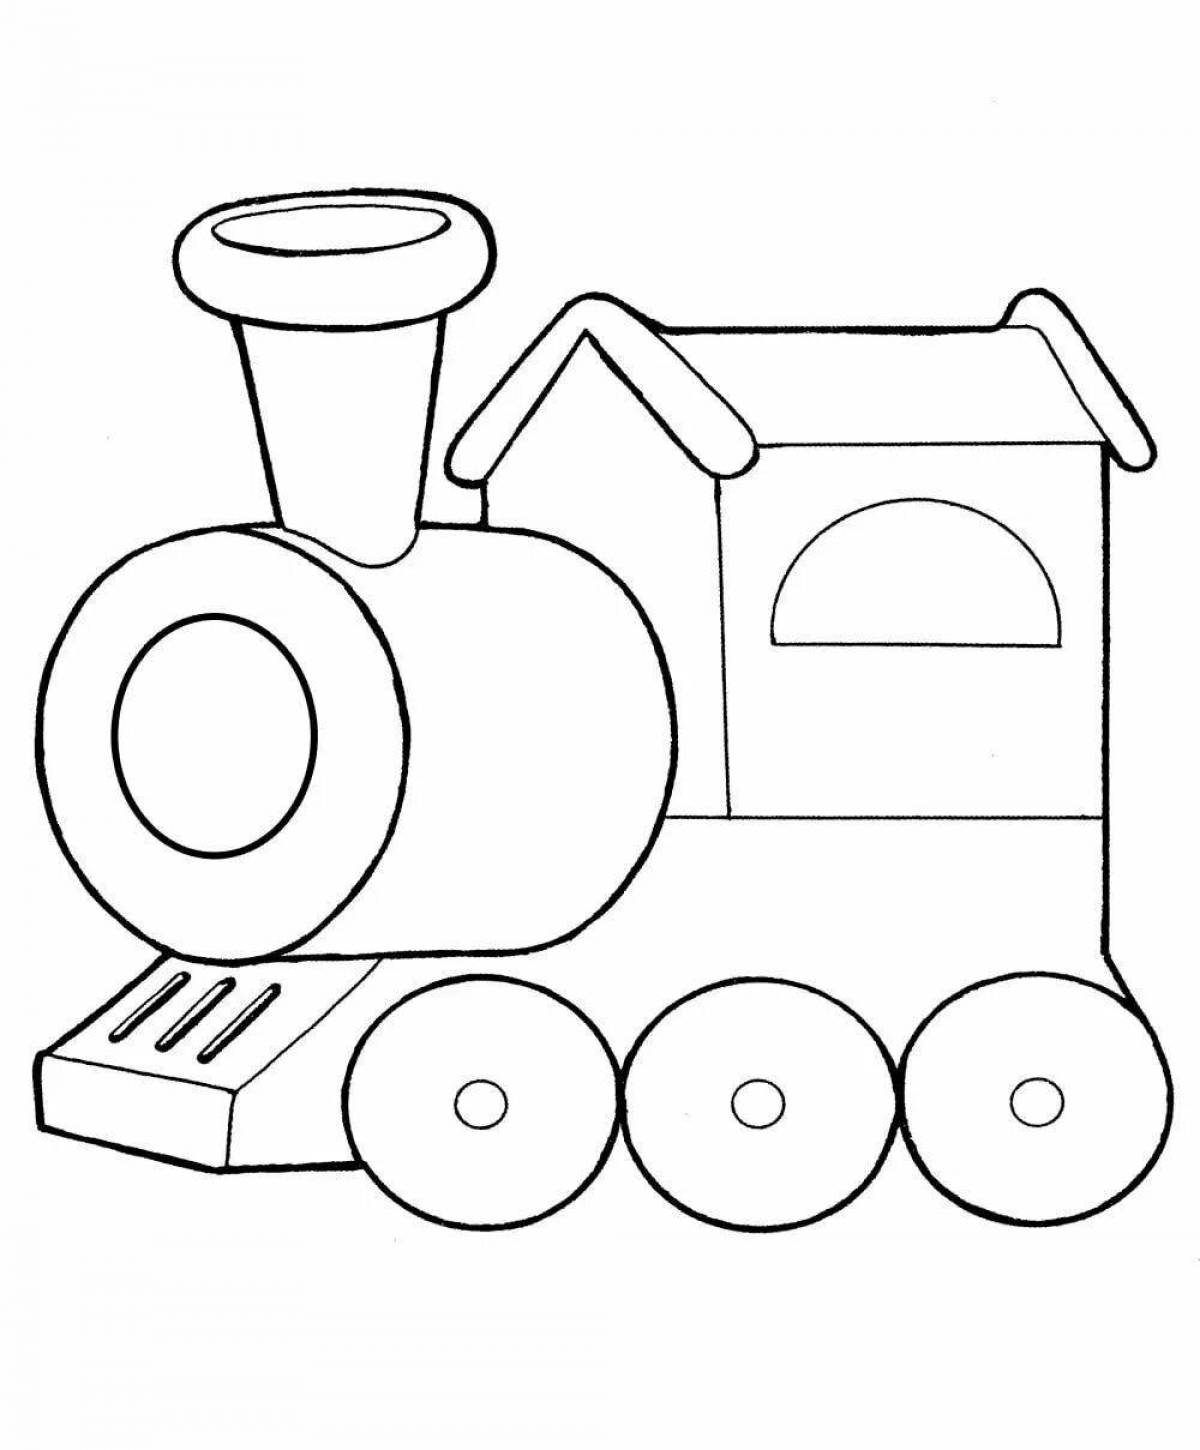 Steam locomotive for children #20